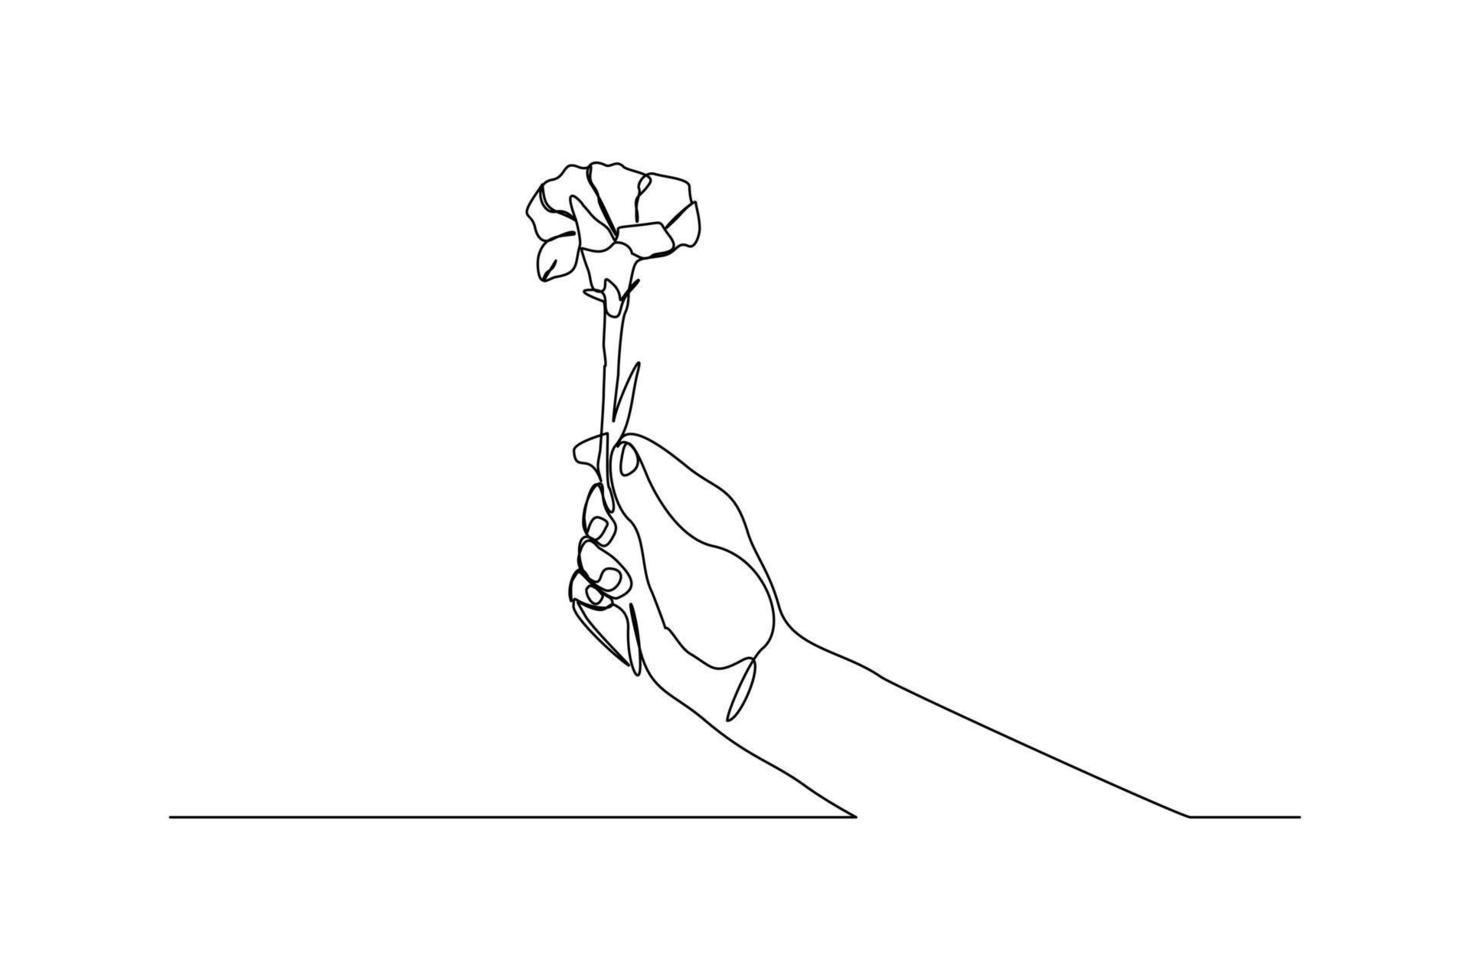 dibujo de línea continua de una mano que sostiene una flor de ramo. mujer de la mano con una flor aislada sobre fondo blanco. dar una señal de amor a alguien. estilo minimalista. ilustración de dibujo vectorial vector